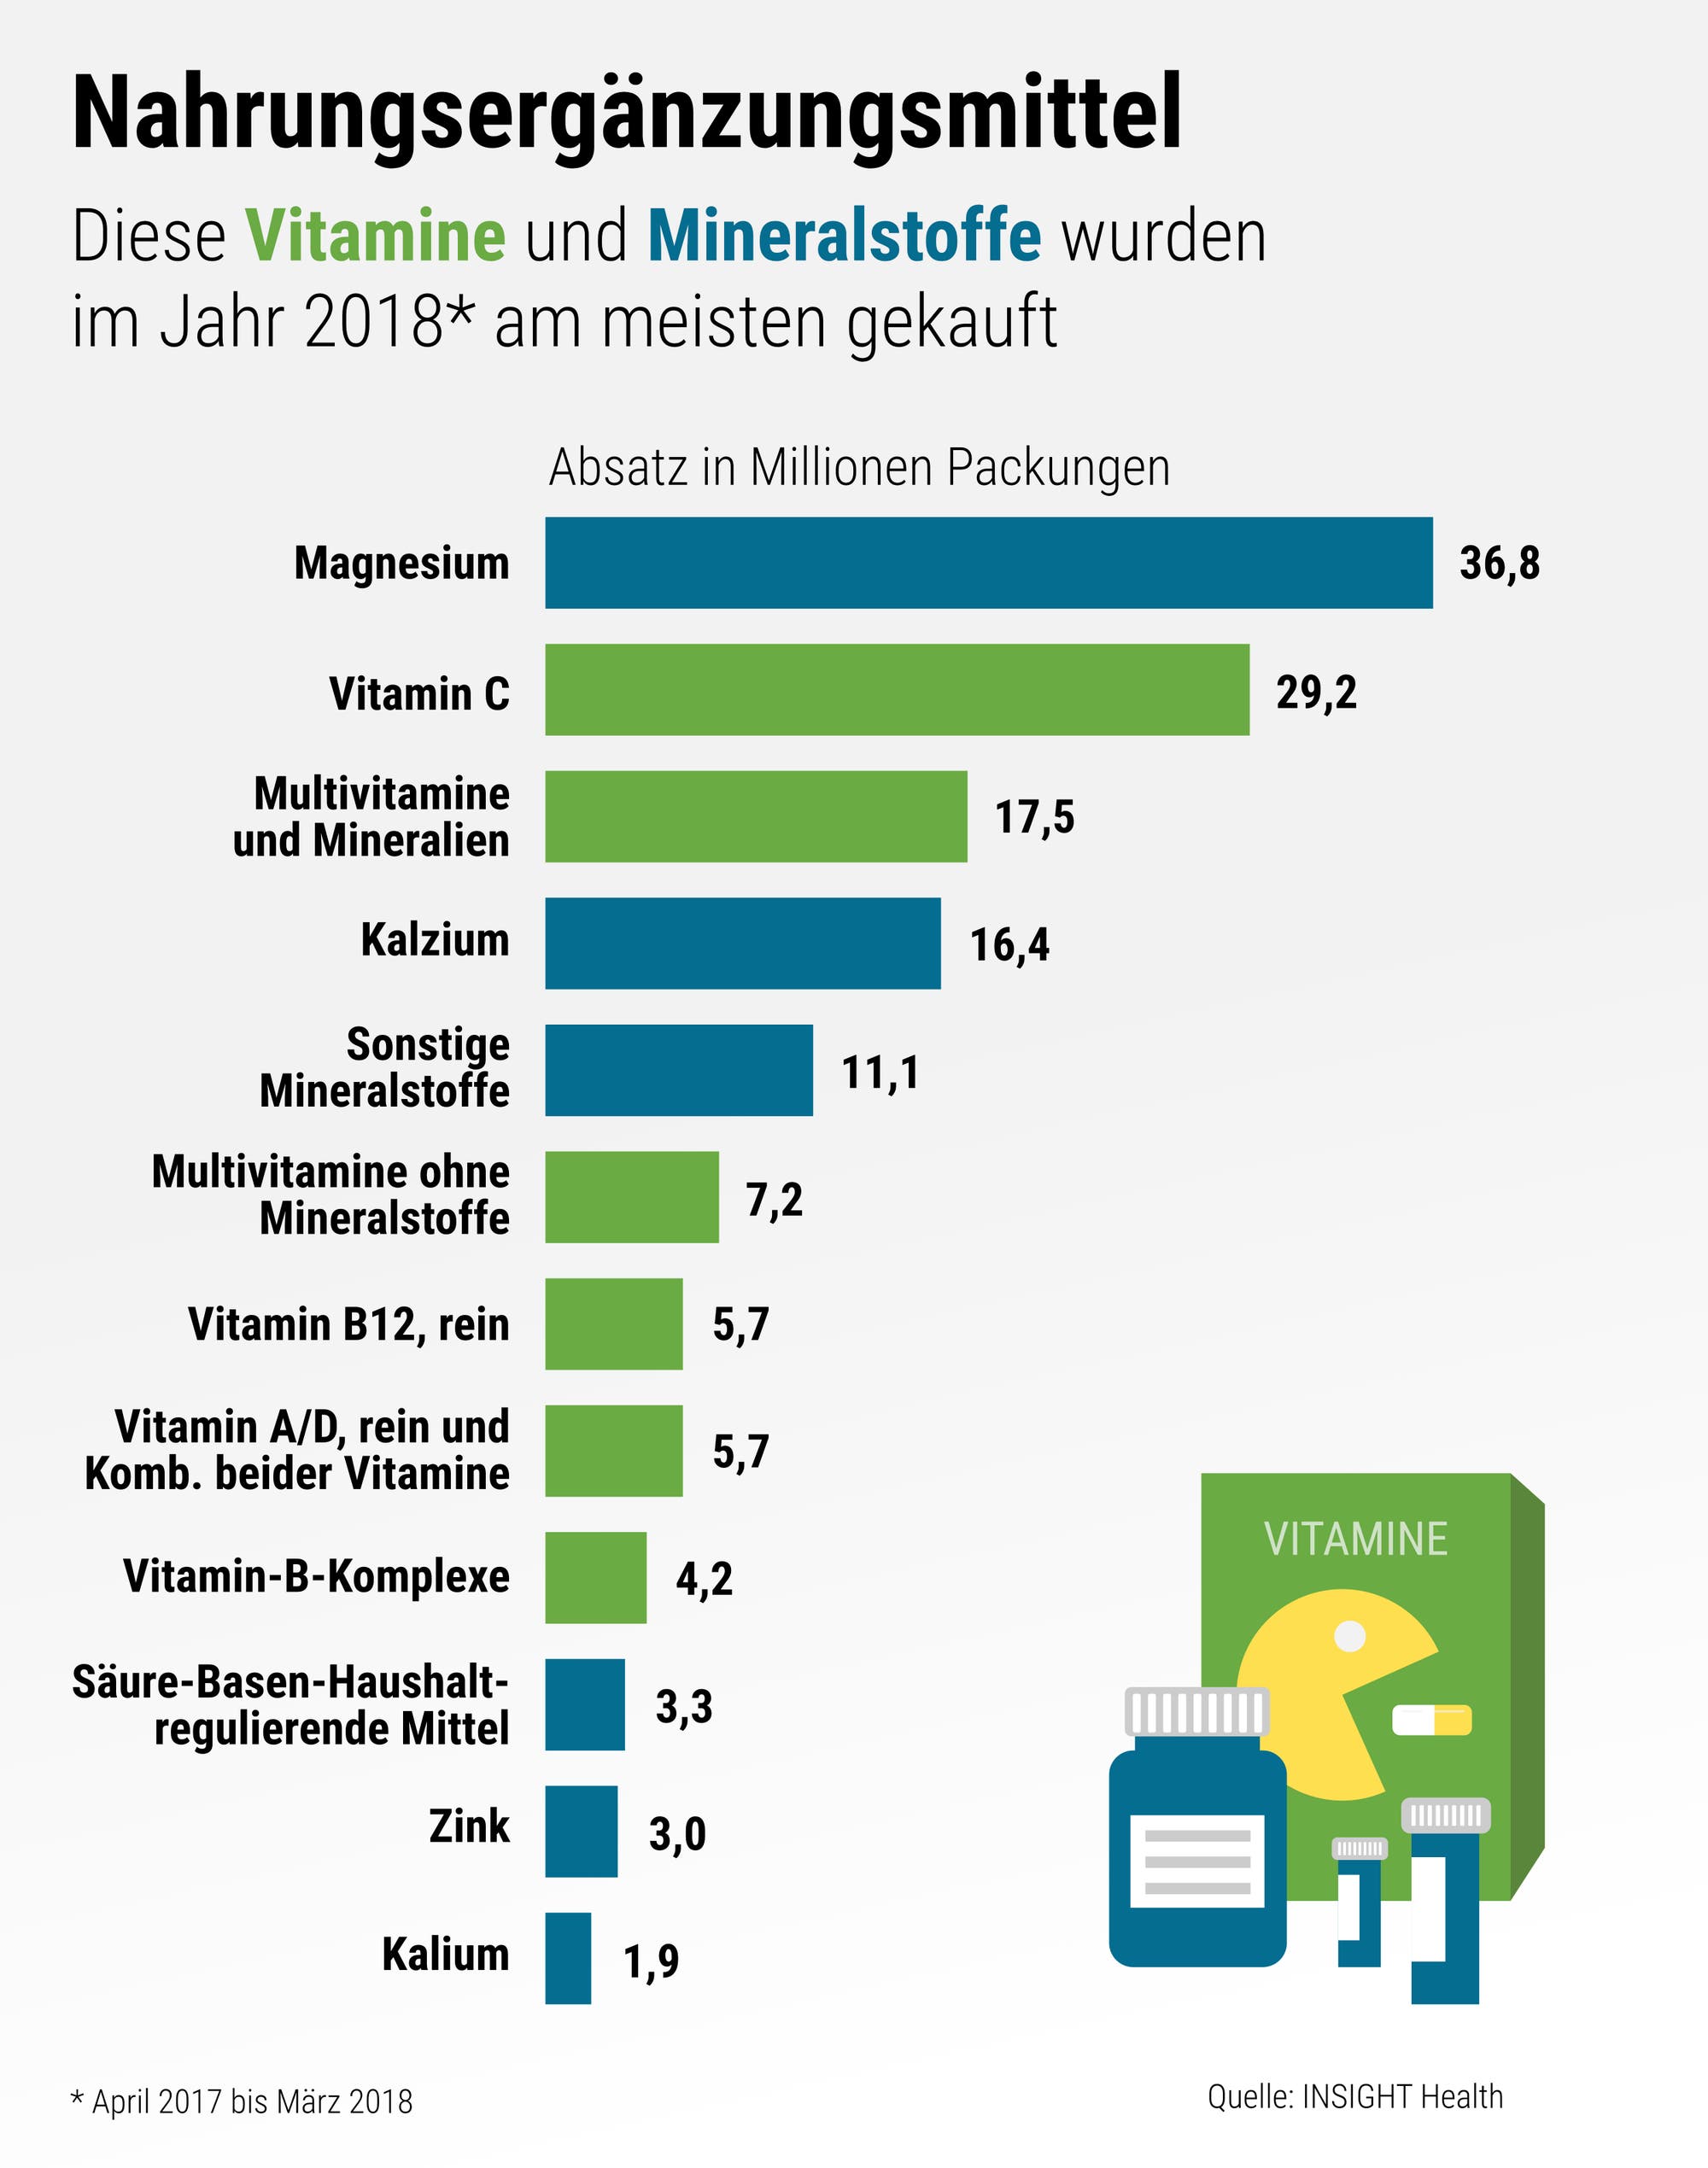 Die Grafik zeigt, wie viele Millionen Packungen an Nahrungsergänzungsmitteln die Deutschen 2018 gekauft haben.